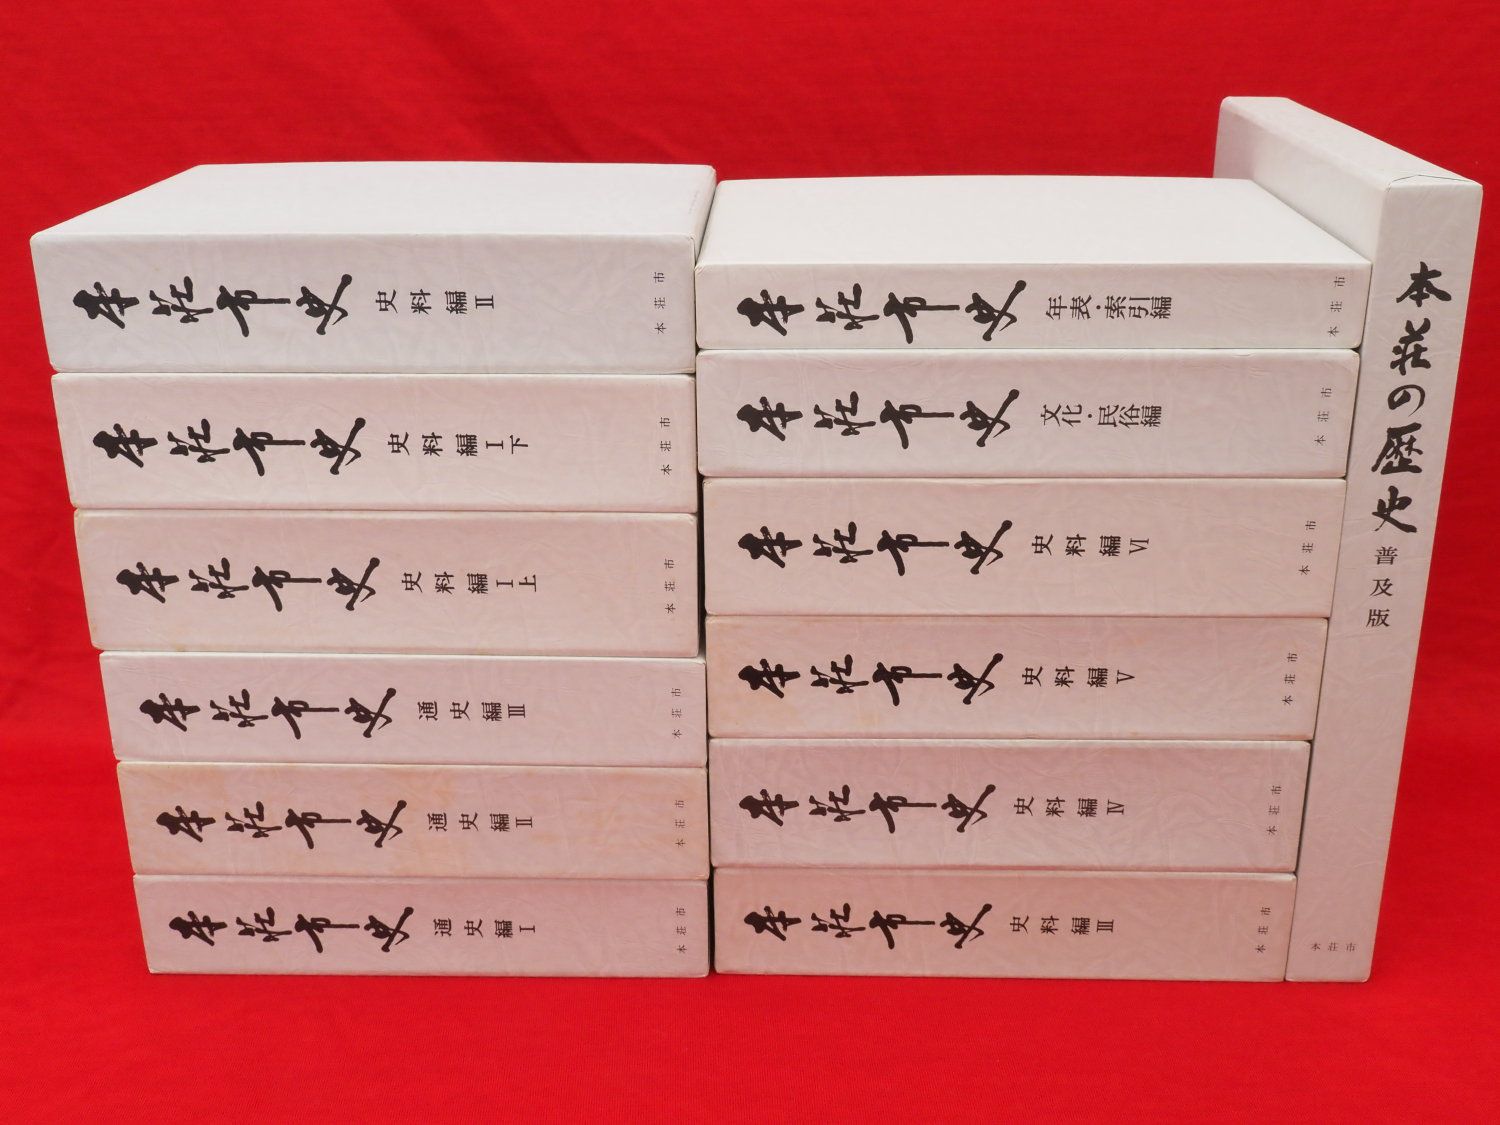 本荘市史+本荘の歴史 13冊組』など、秋田県郷土史、日本史関連ほか計67点新入荷商品追加しました | 古ほんや板澤書房ブログ